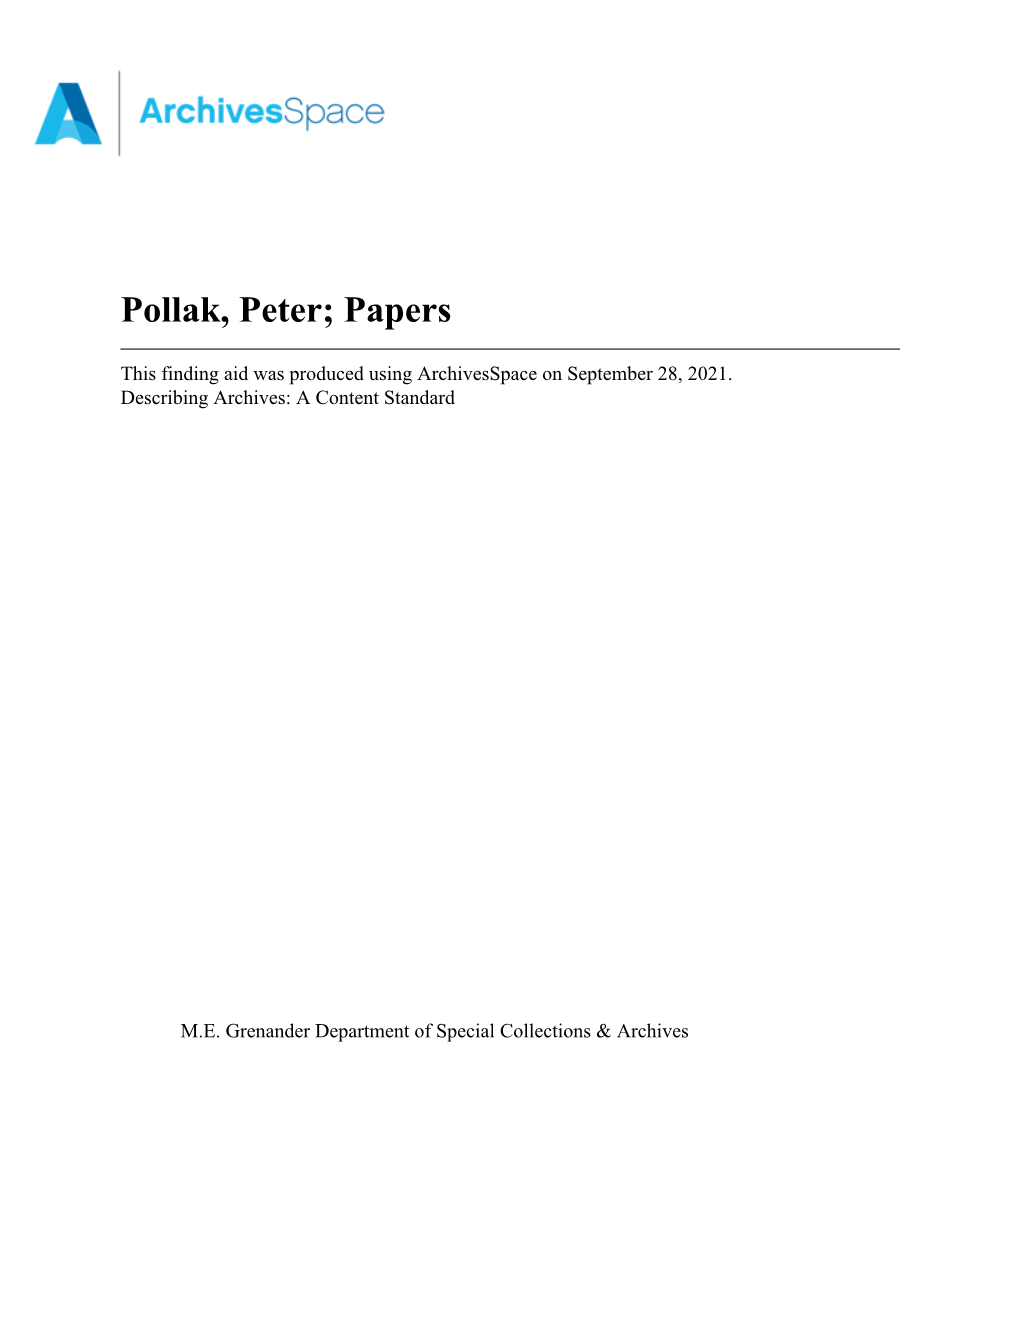 Pollak, Peter; Papers Apap368